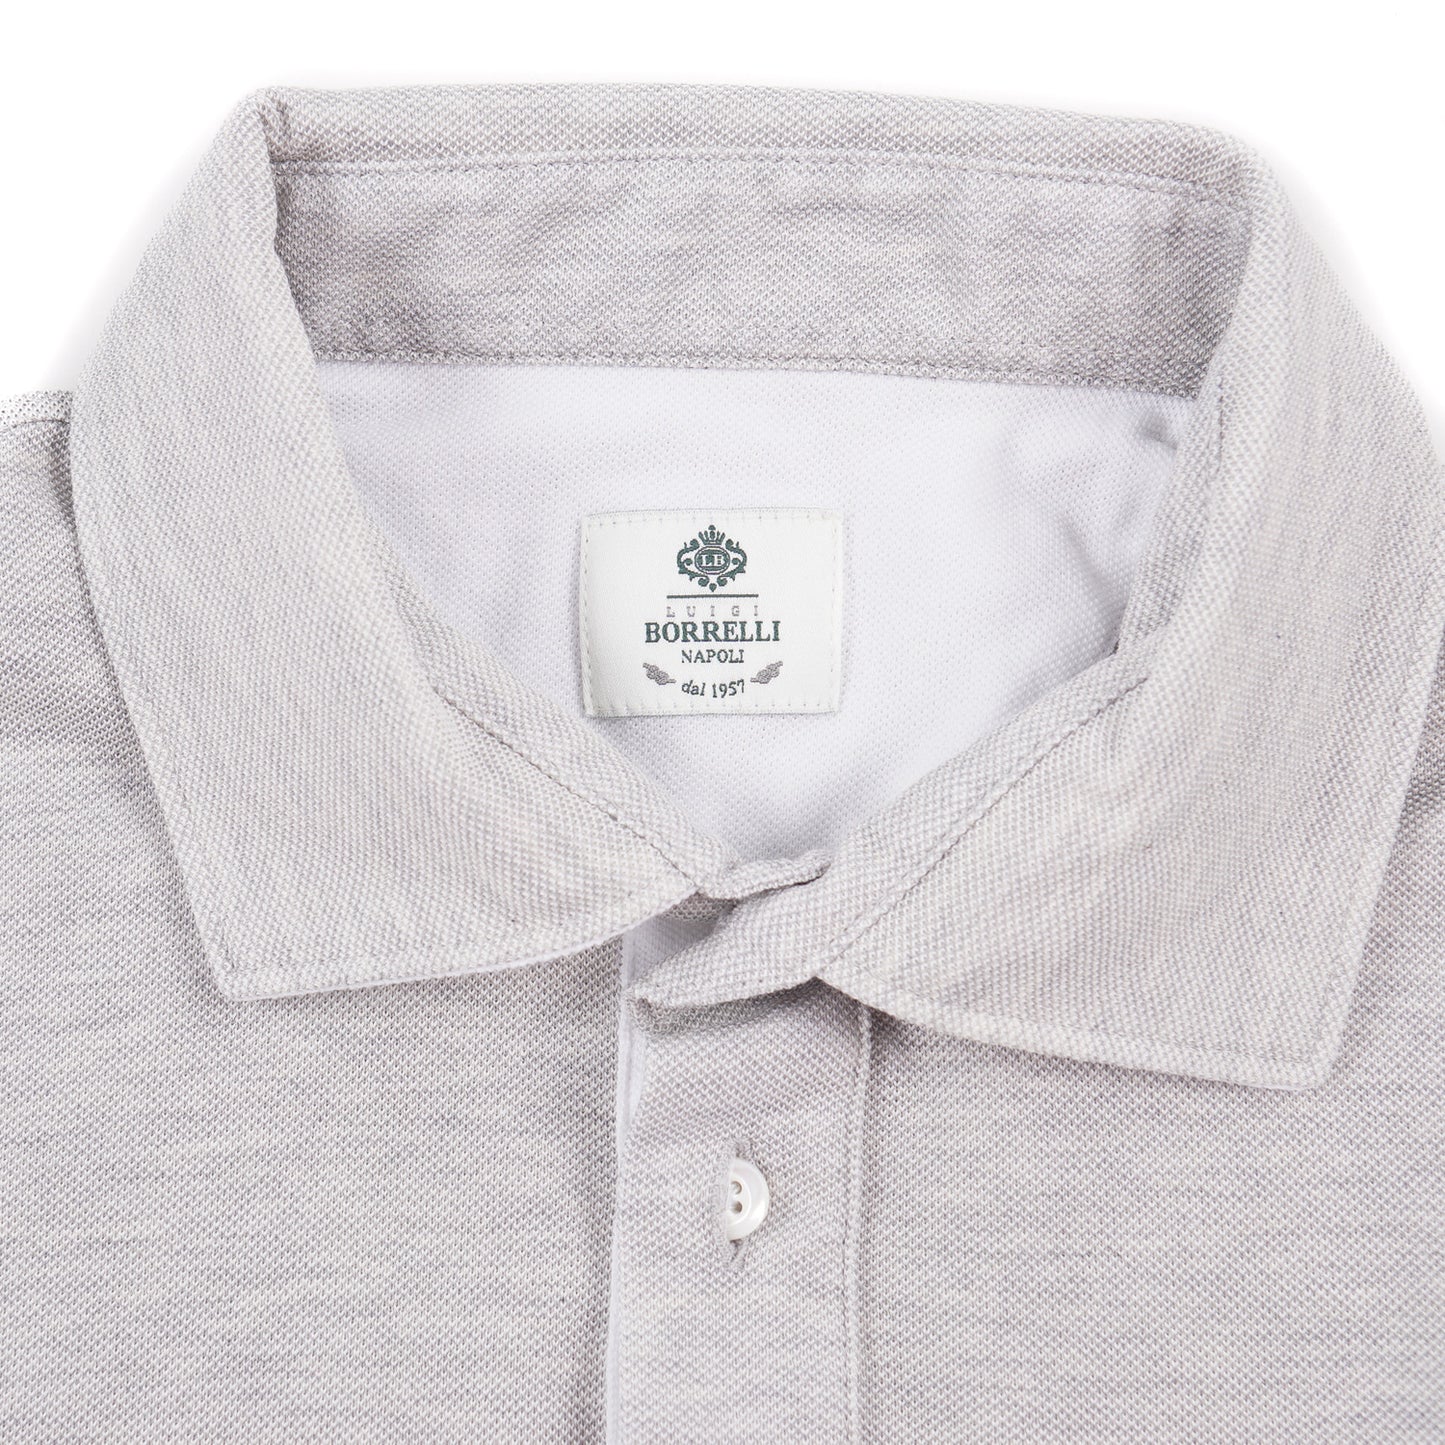 Luigi Borrelli Pique Knit Cotton Polo Shirt - Top Shelf Apparel